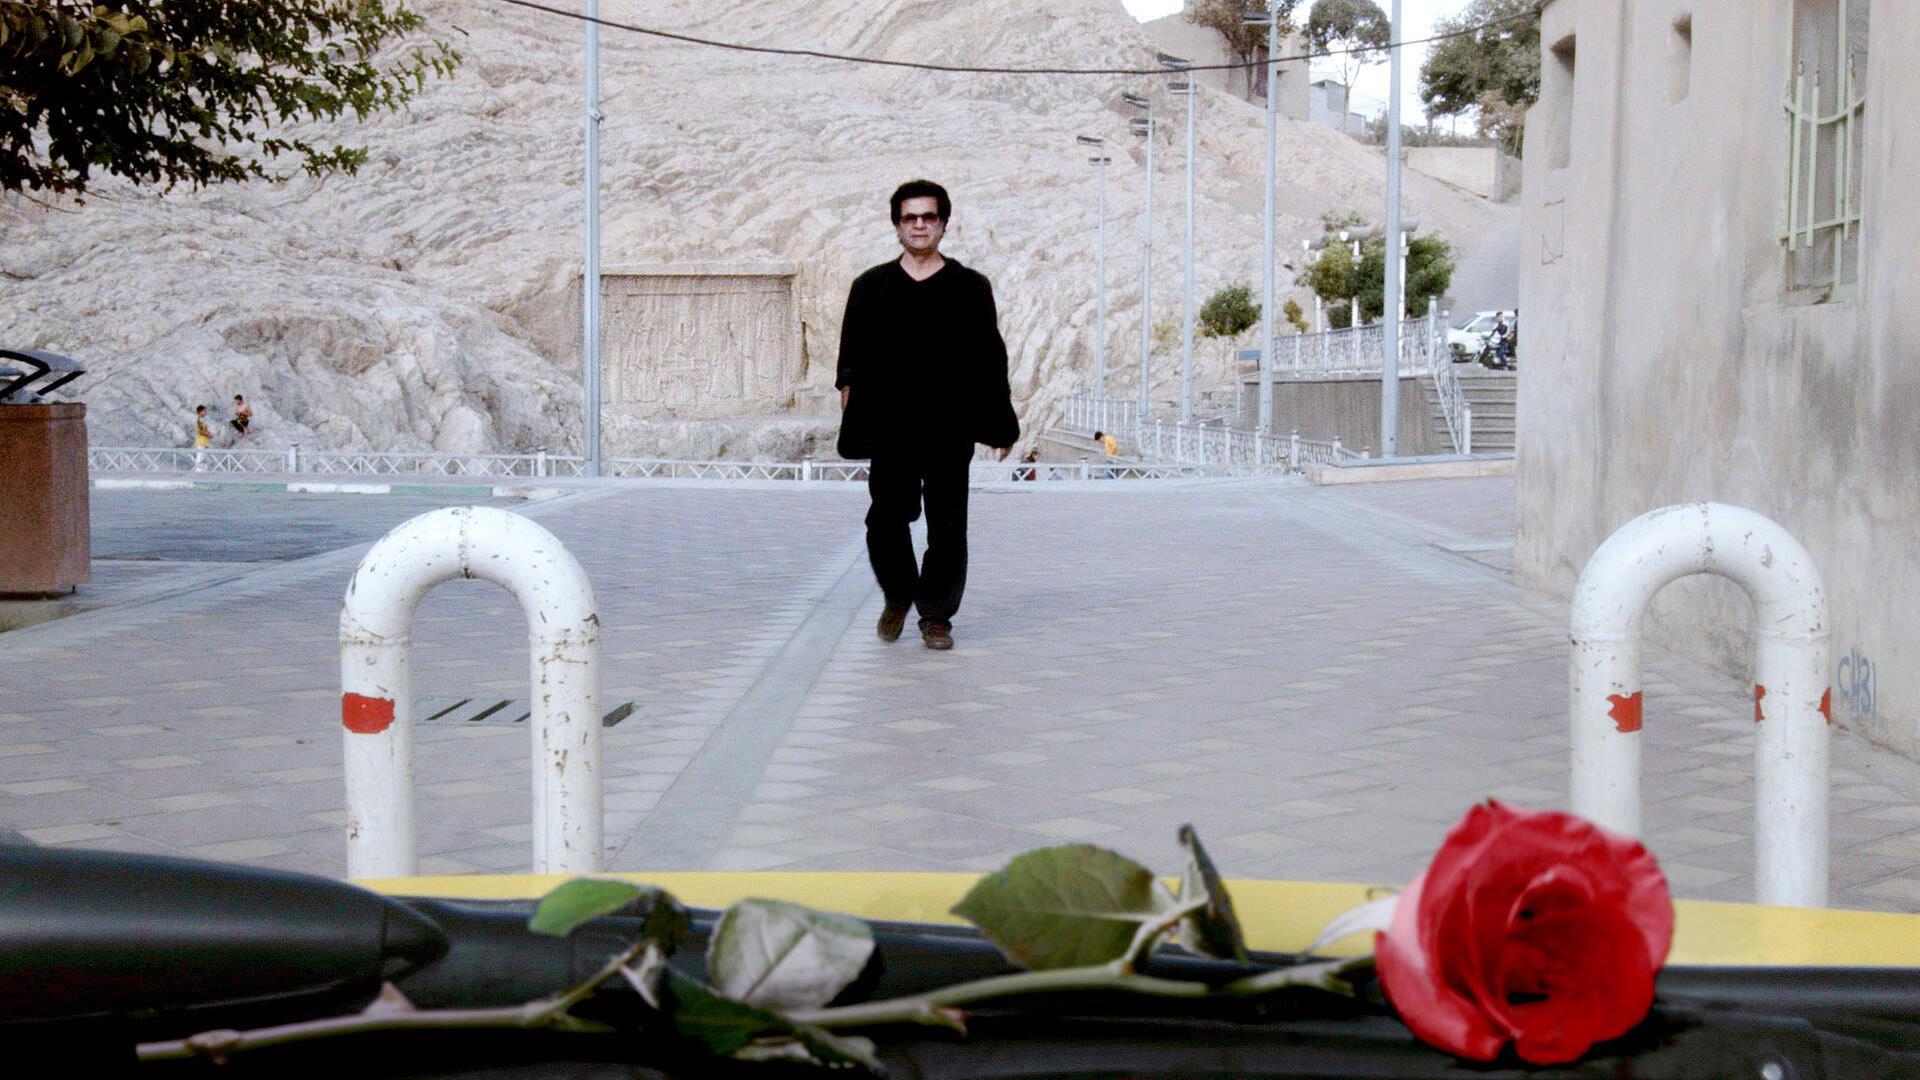 In seinem heimlich gefilmten Werk "Taxi" sieht man Regisseur Jafar Panahi durch die Scheibe eines Autos, wie er eine Straße entlang geht.